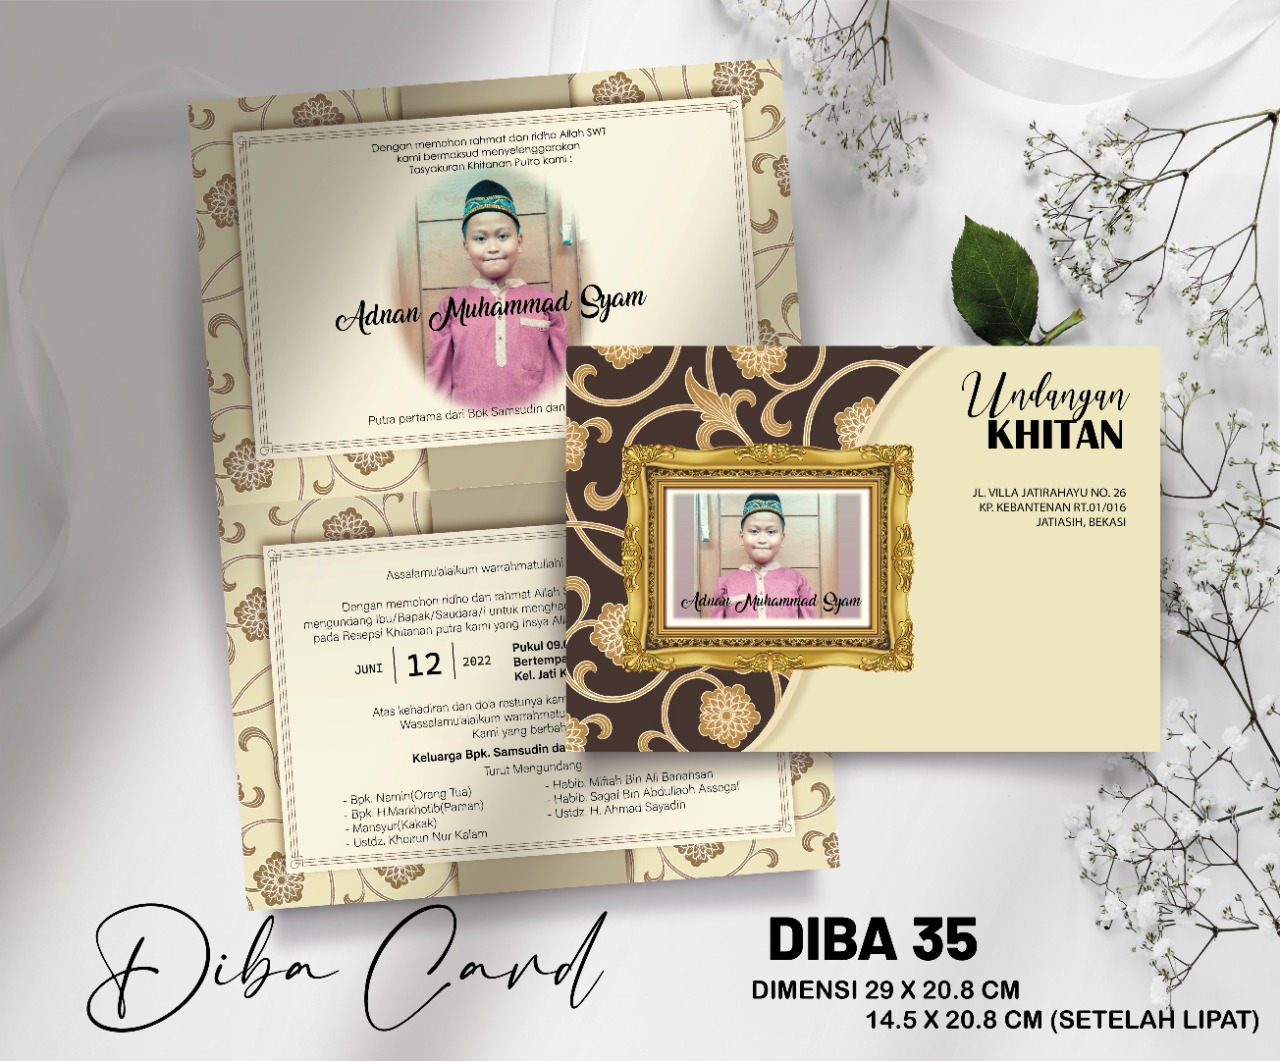 DIBA CARD 35 